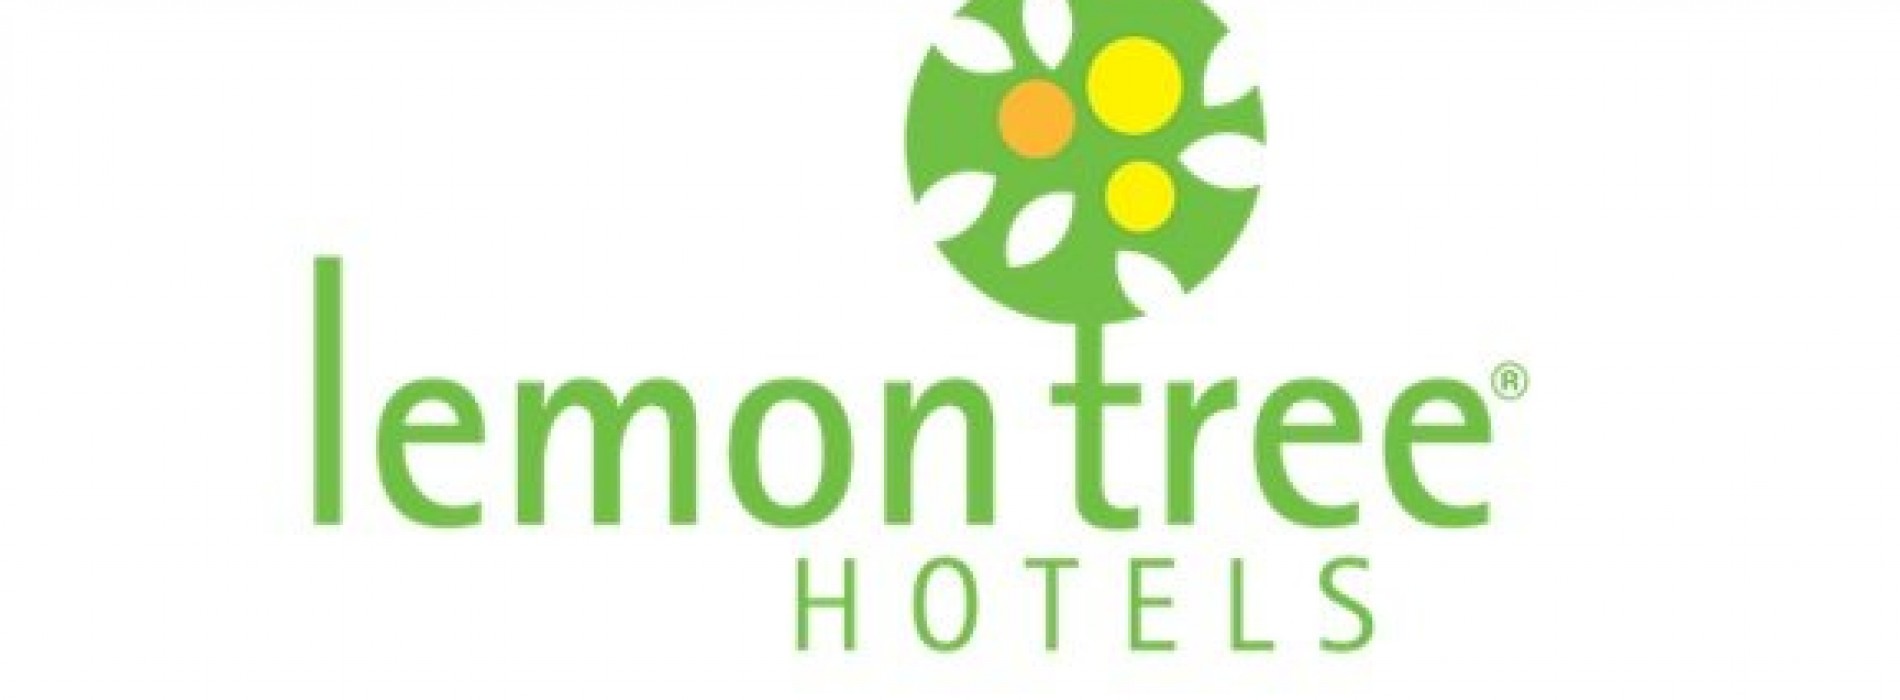 Lemon Tree Hotels enters Baddi